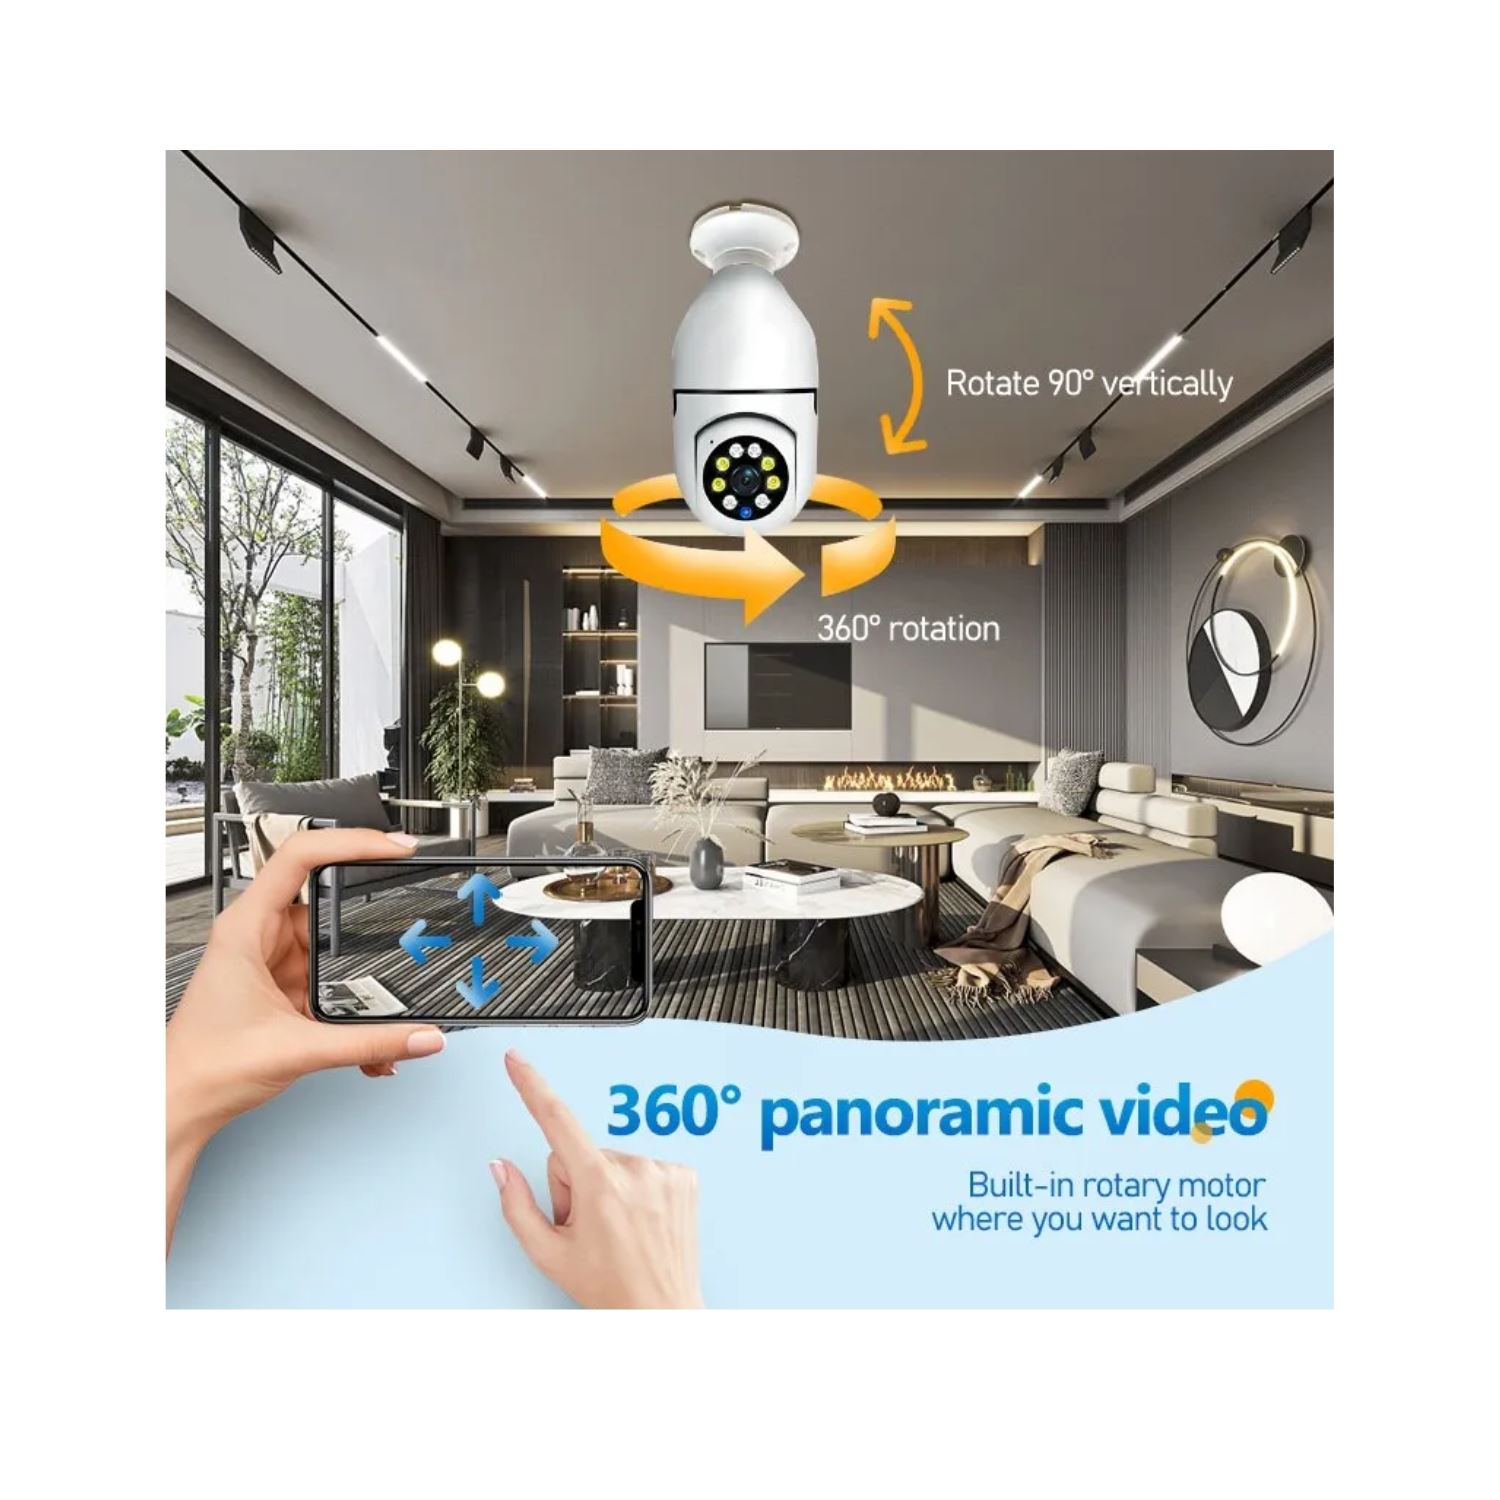 Camara IP Wifi Foco 5G Videocamara Seguridad Puede Ver desde el Celular OEM